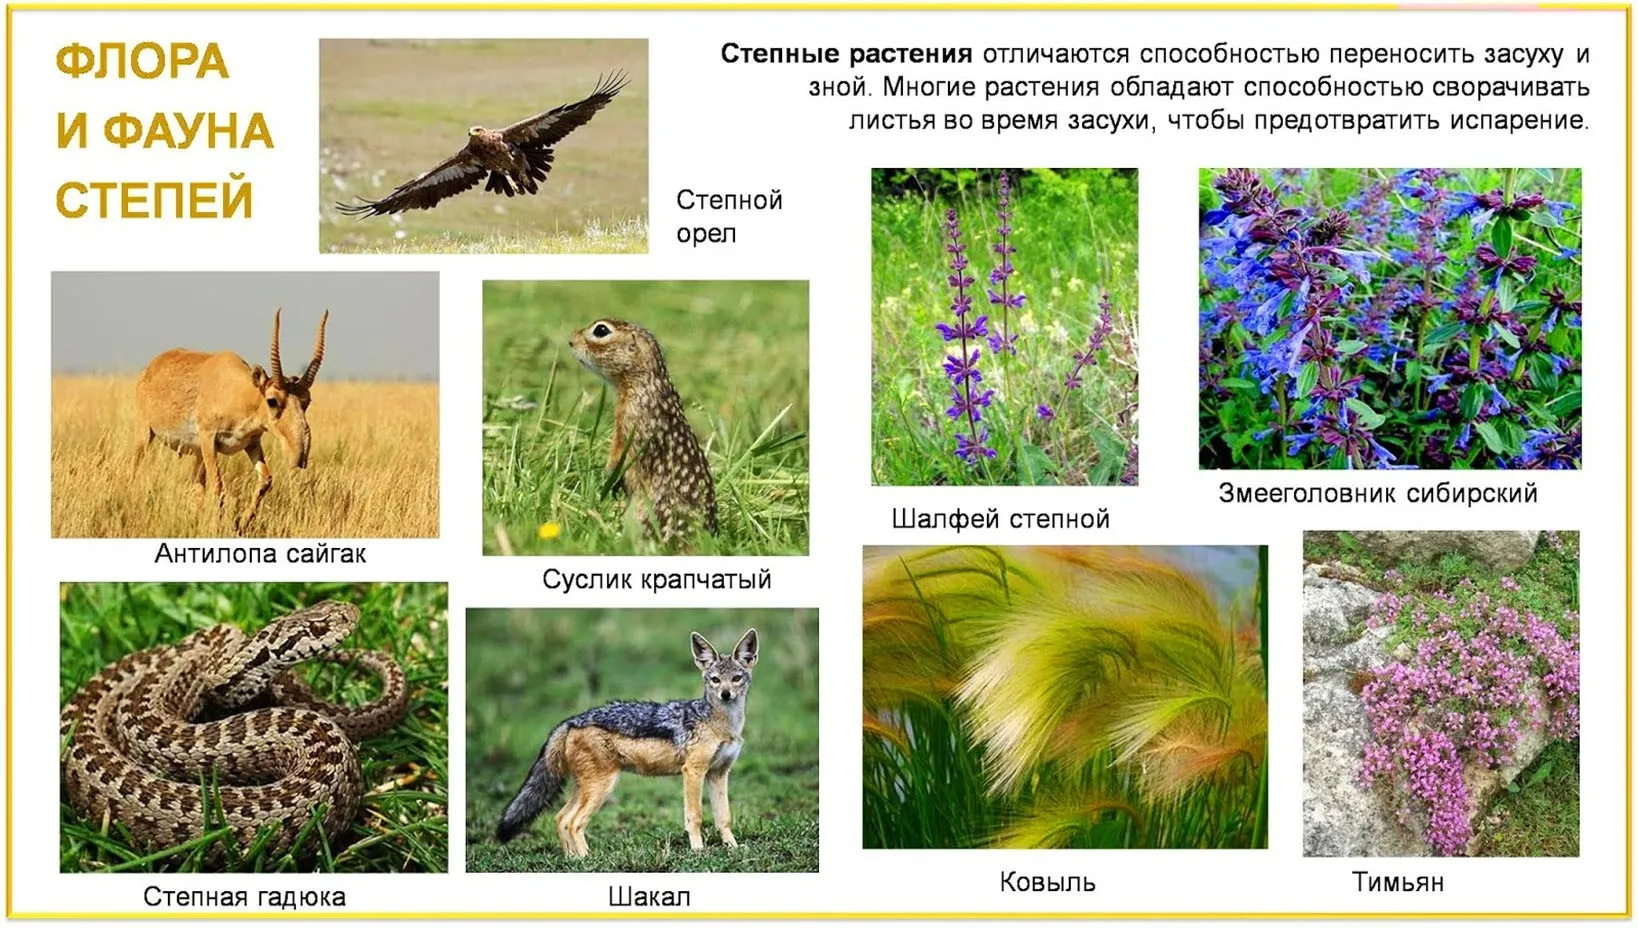 Какие растения характерны для степей россии. Зоны лесостепей и степей растительность. Зона степей и лесостепей животные и растения.